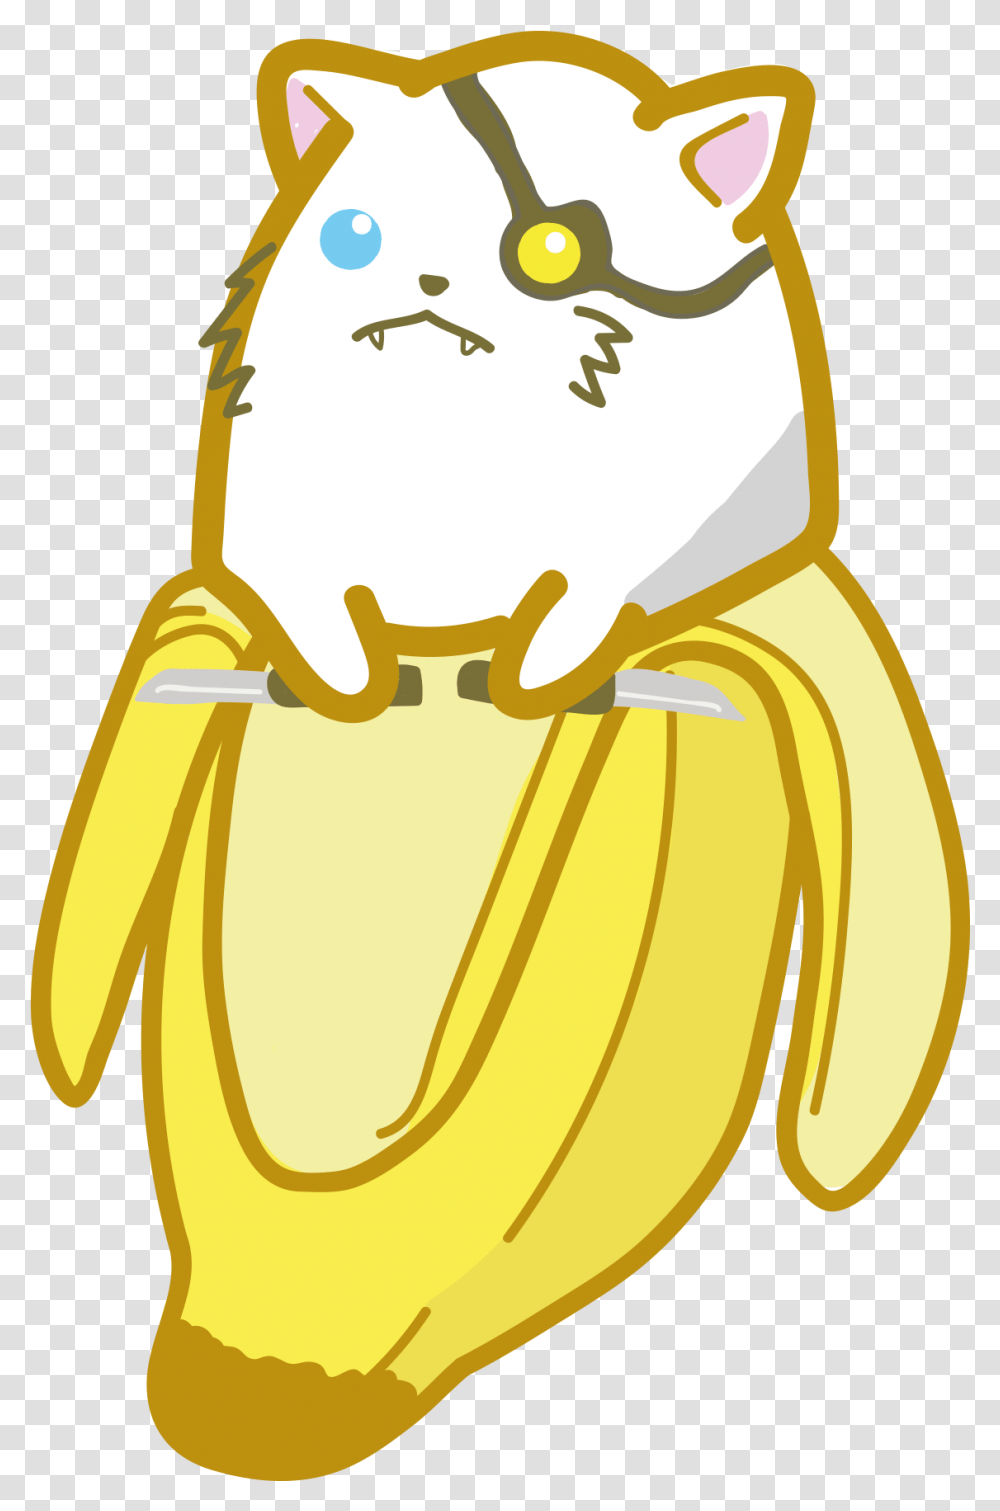 Rengnya Rengar From League Of Legends As A Bananya Cartoon, Plant, Food, Fruit, Animal Transparent Png